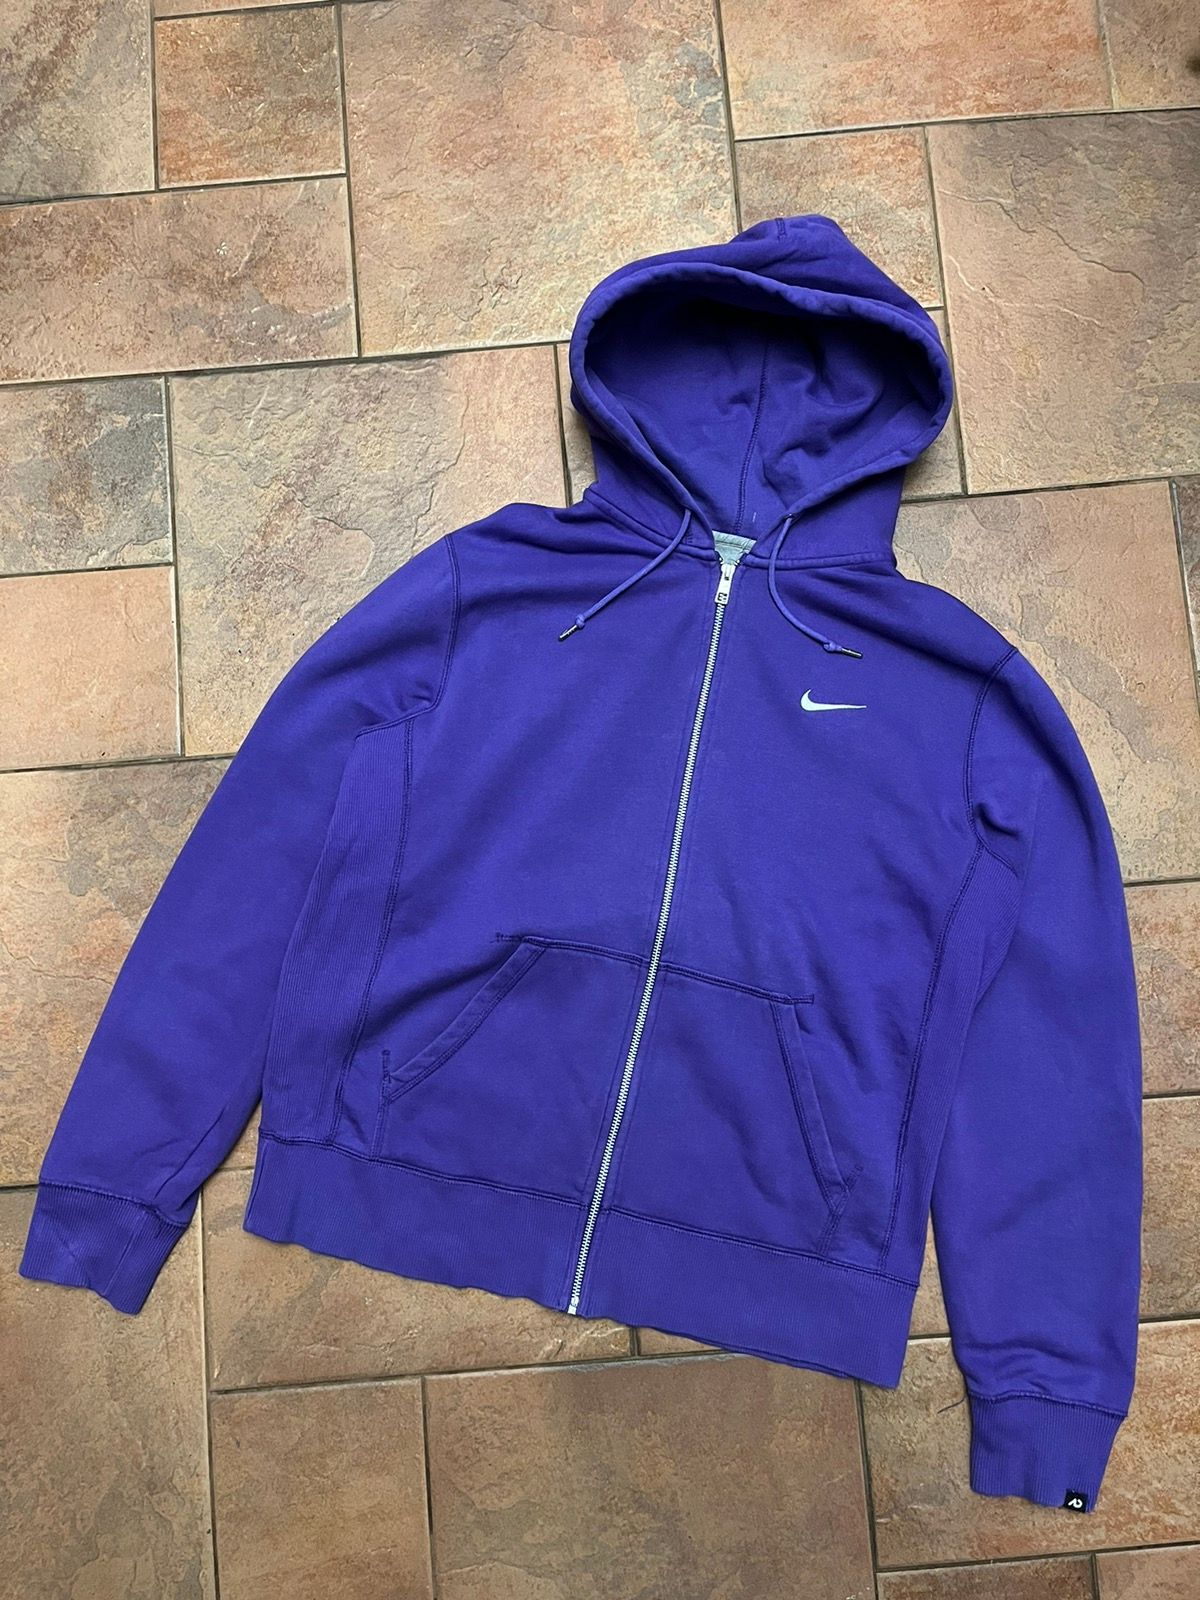 Nike Nike Purple Zip Hoodie | Grailed